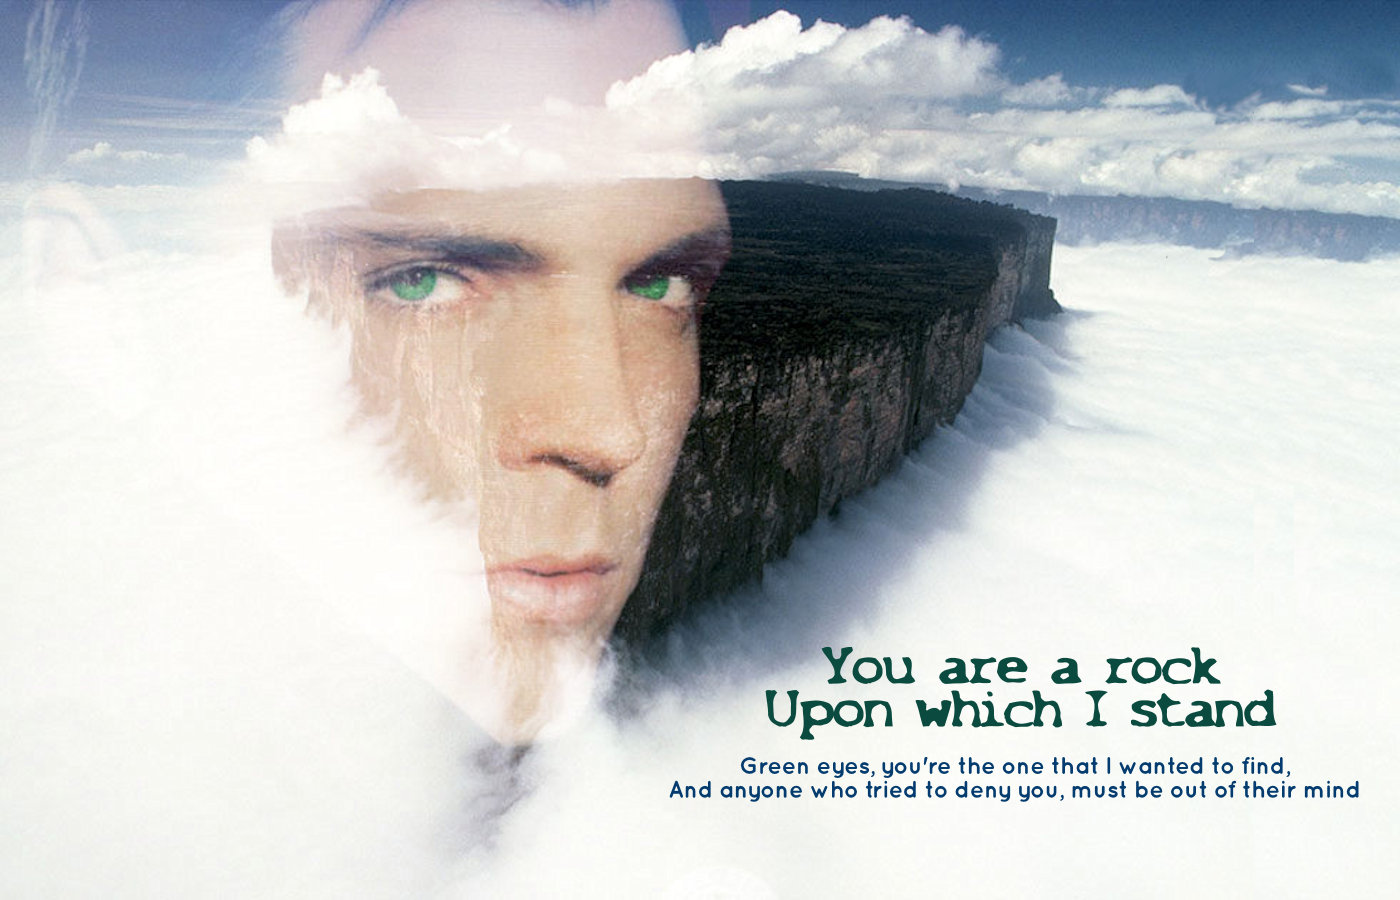 Alex Krycek - Green Eyes by Tarlan
Land of Art song challenge
Green Eyes - Coldplay
Keywords: xfiles_art;xfiles_wpr